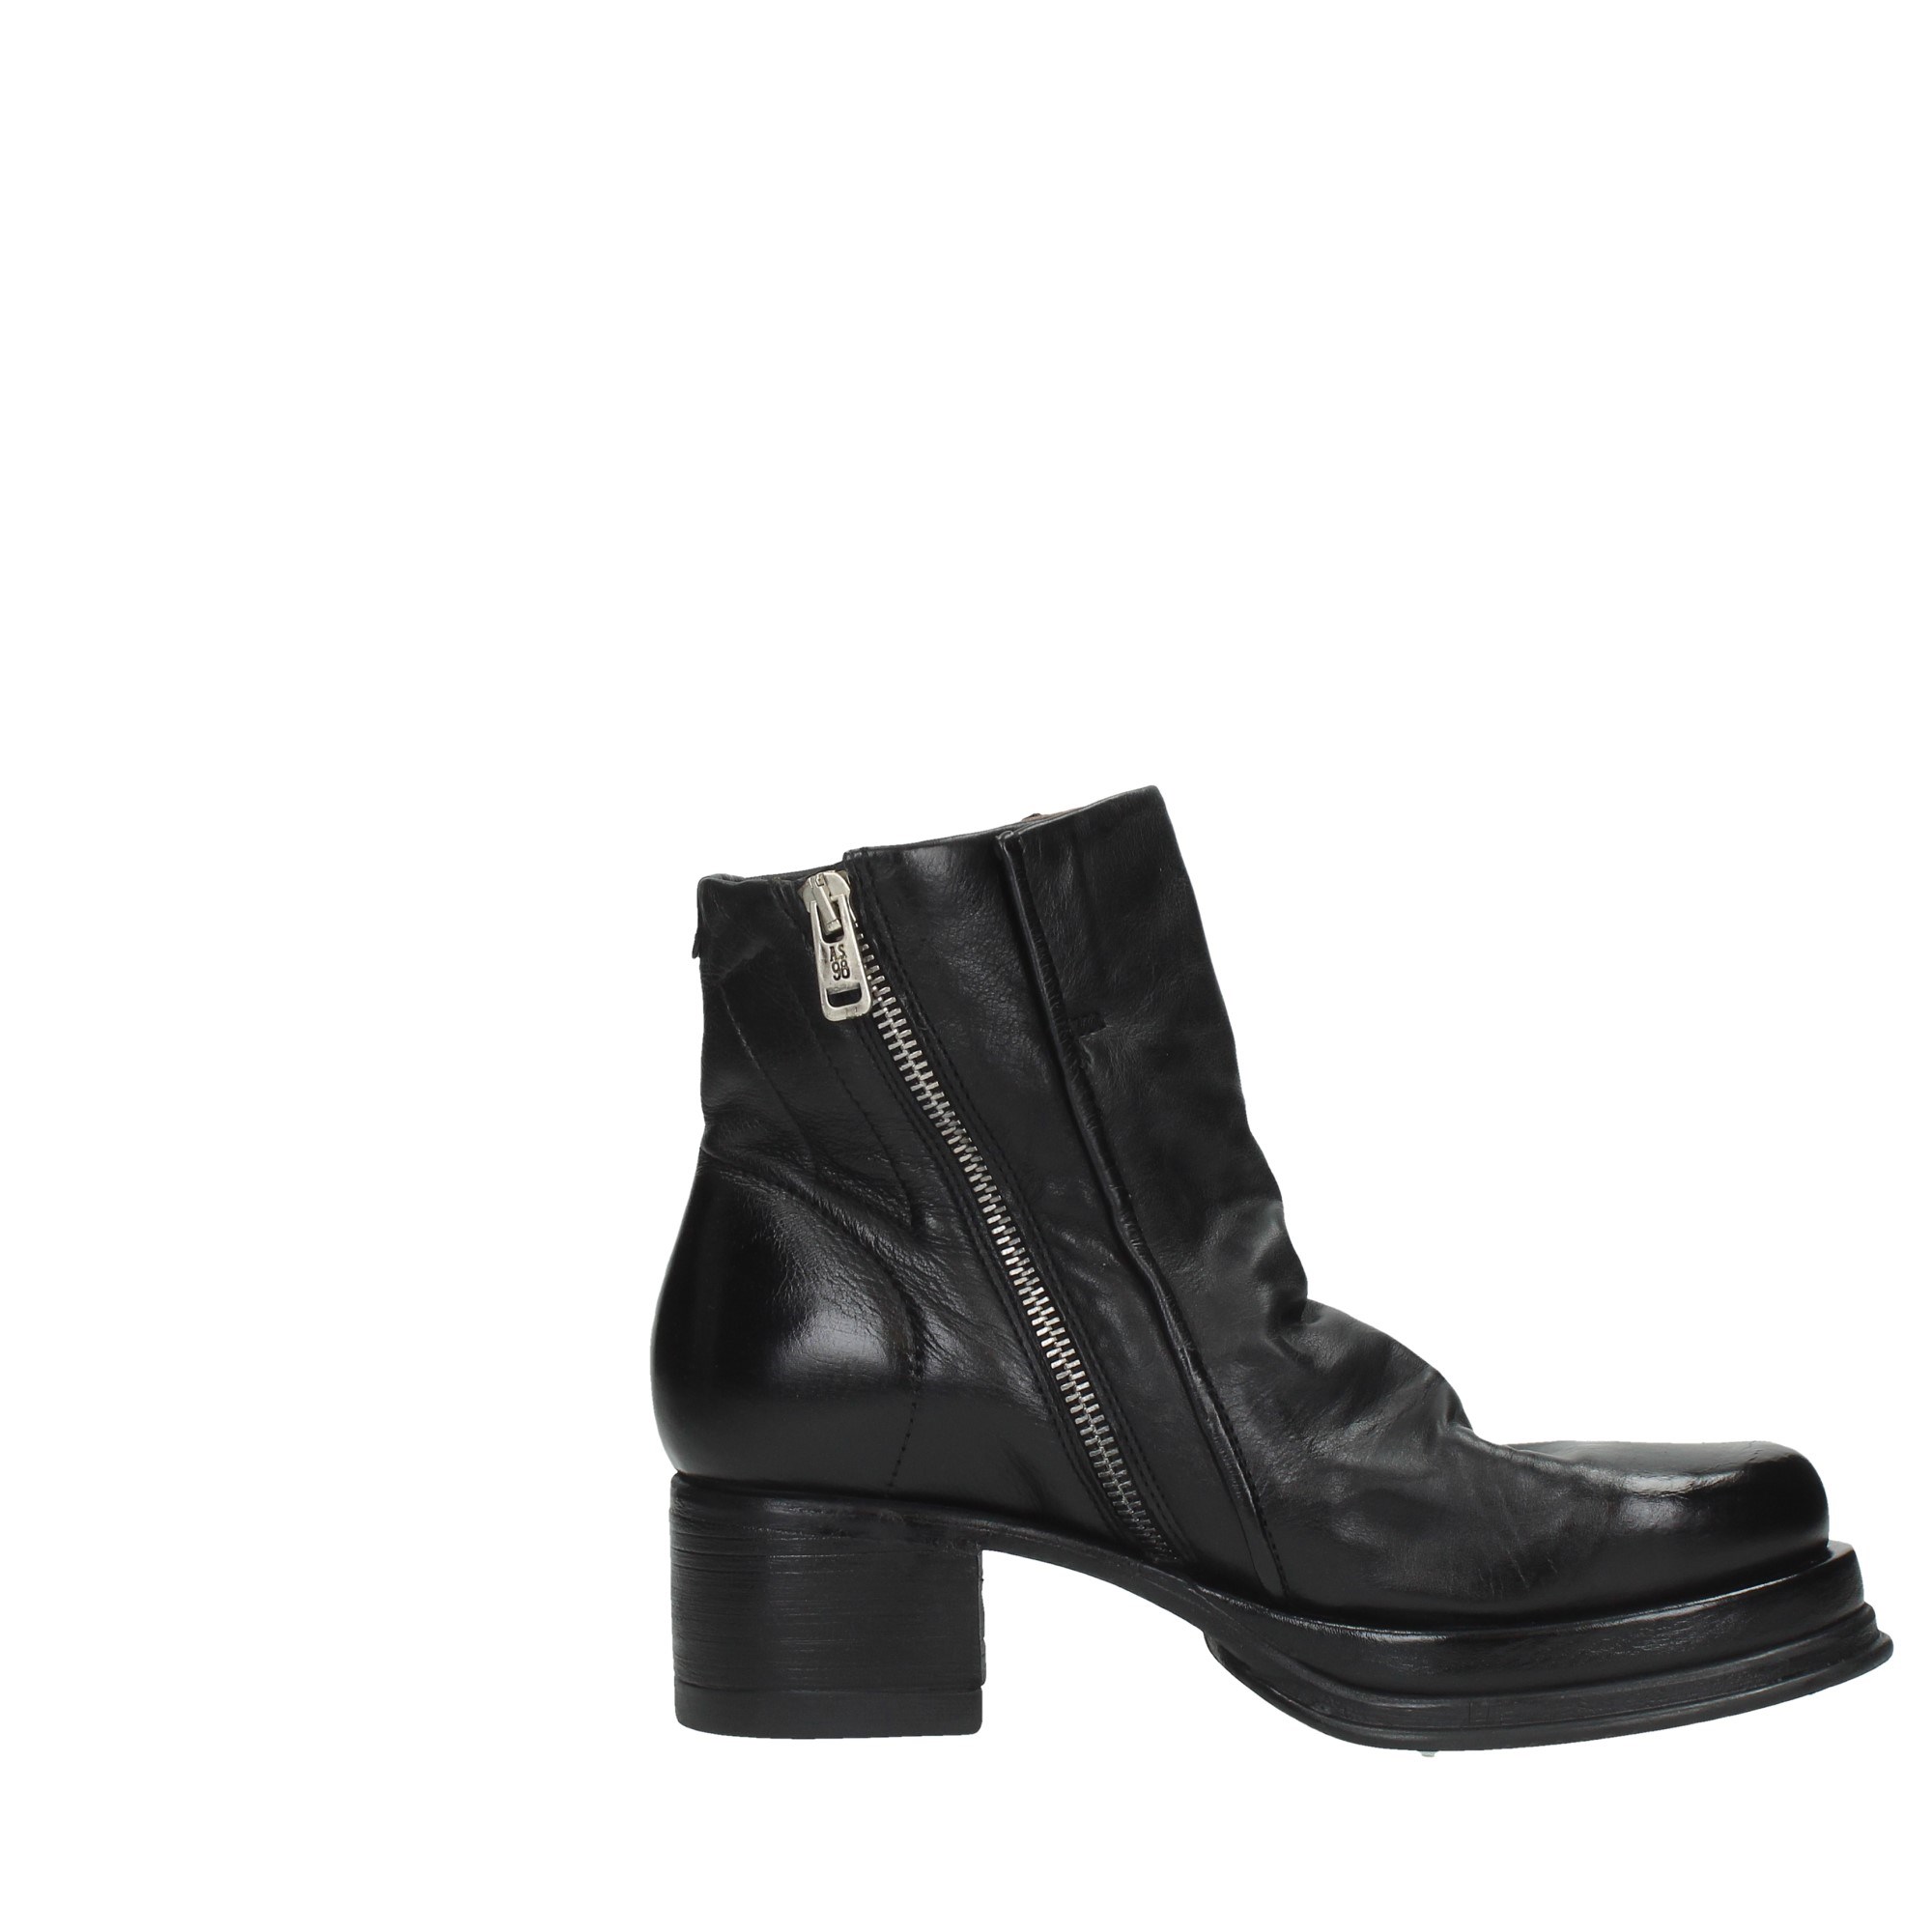 As98 Shoes Women Booties B52204